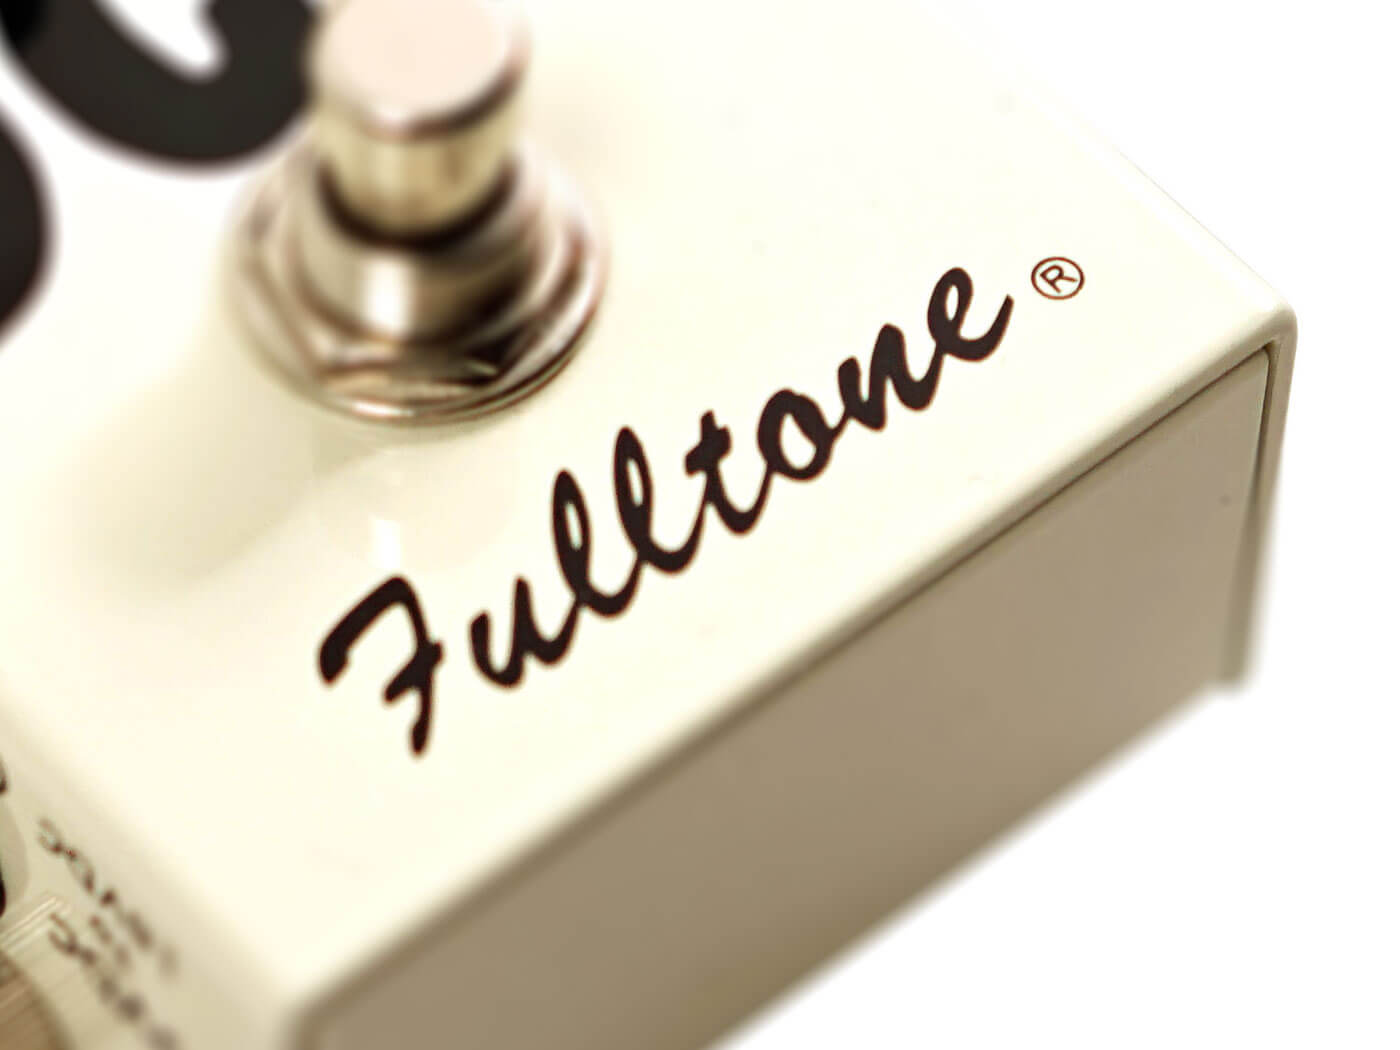 Fulltone's Logo